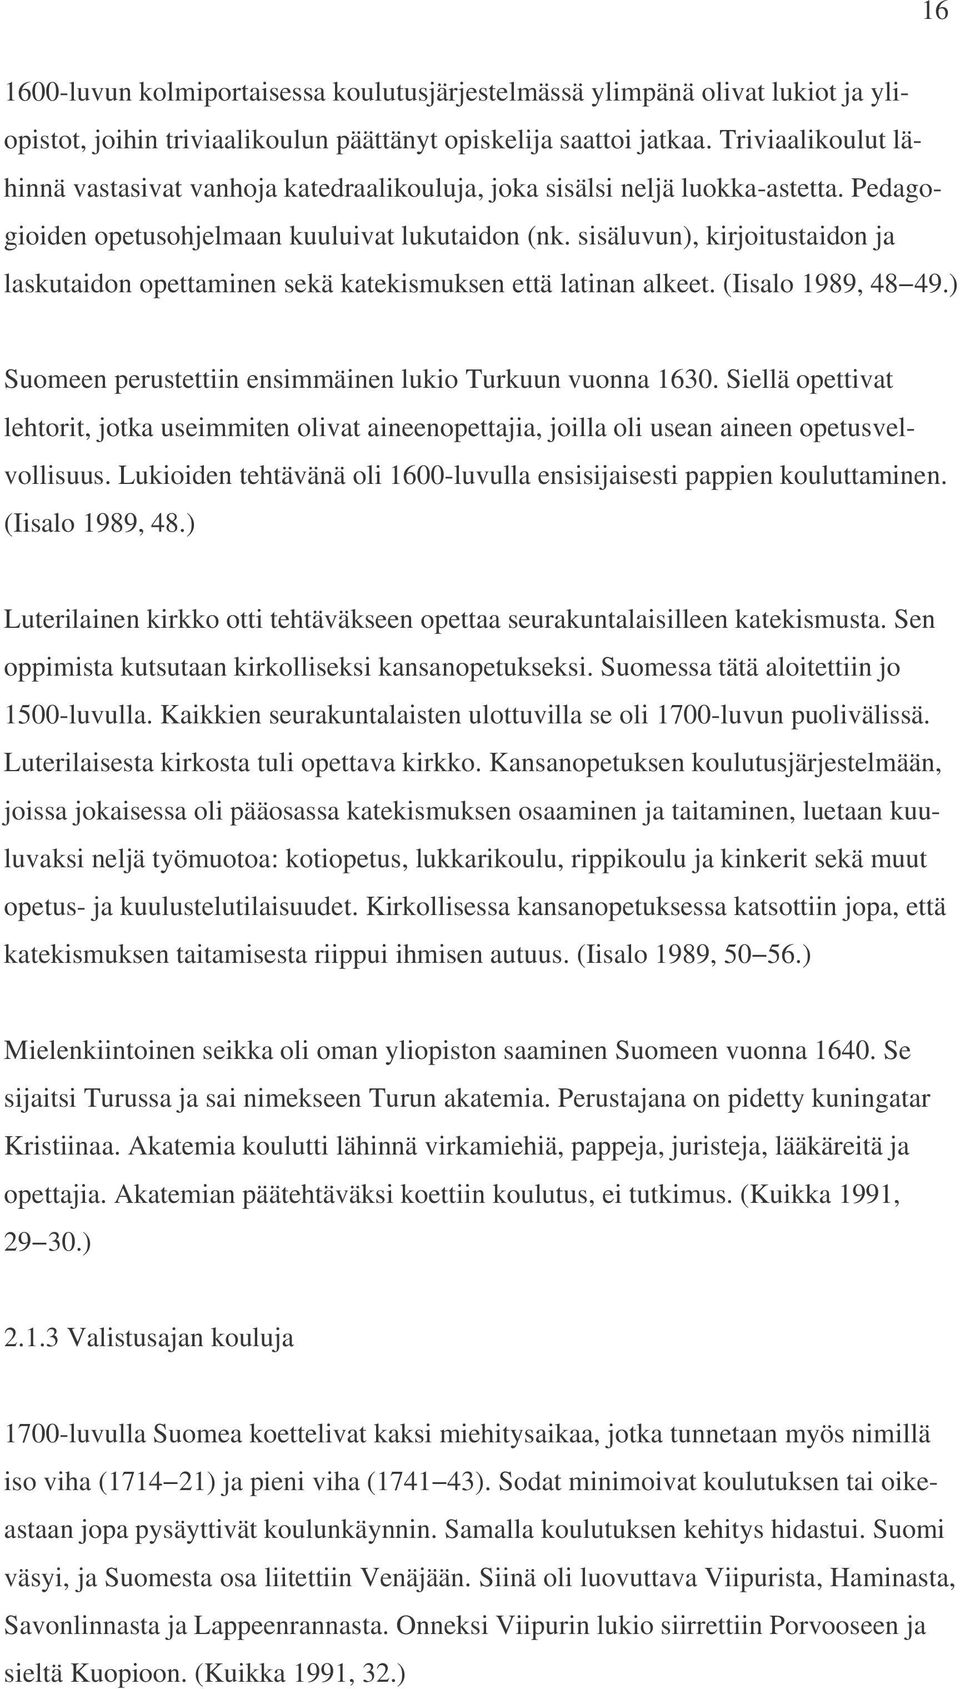 sisäluvun), kirjoitustaidon ja laskutaidon opettaminen sekä katekismuksen että latinan alkeet. (Iisalo 1989, 48 49.) Suomeen perustettiin ensimmäinen lukio Turkuun vuonna 1630.